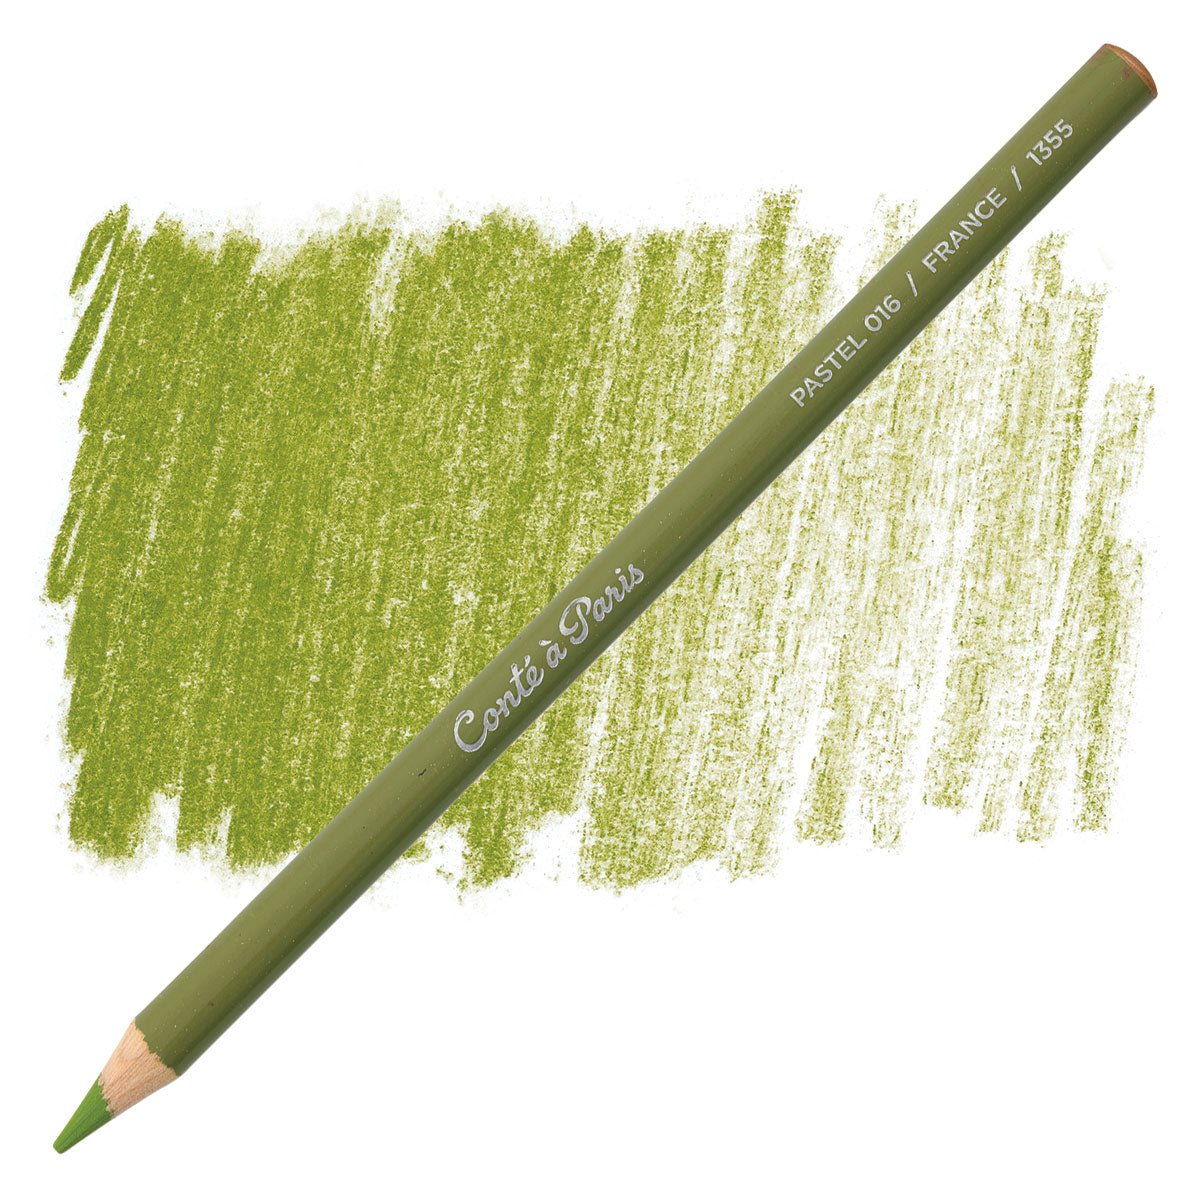 Conte Pastel Pencil 016 Olive Green - theartshop.com.au